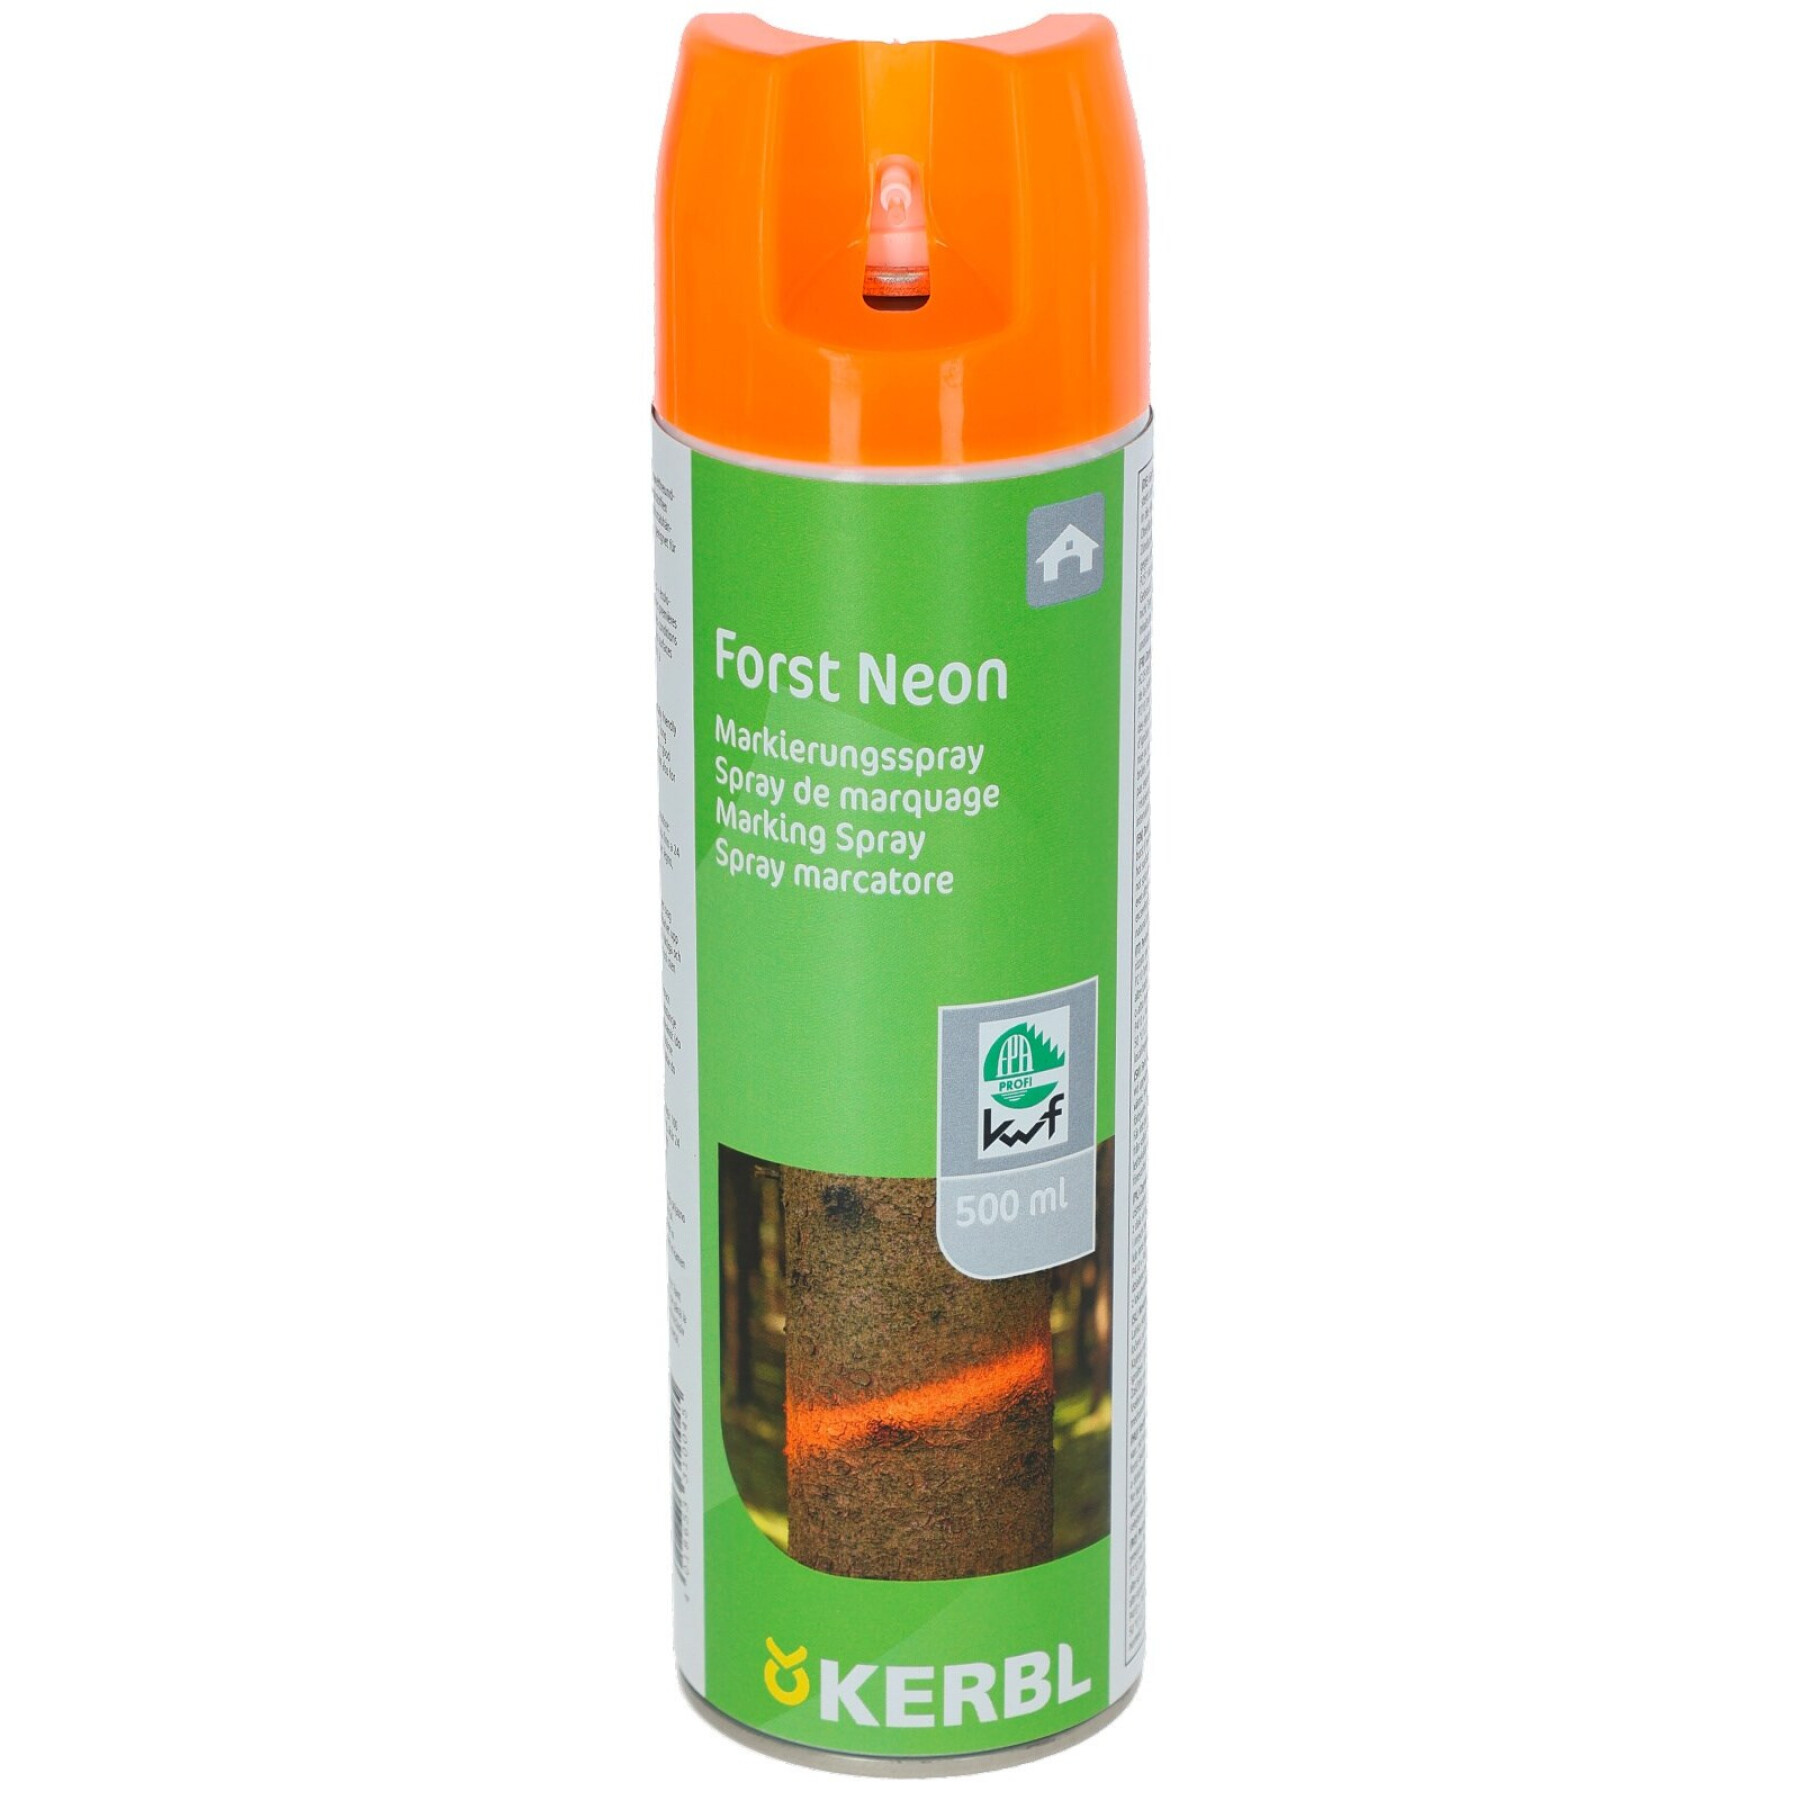 Marking spray Kerbl Forst Neon